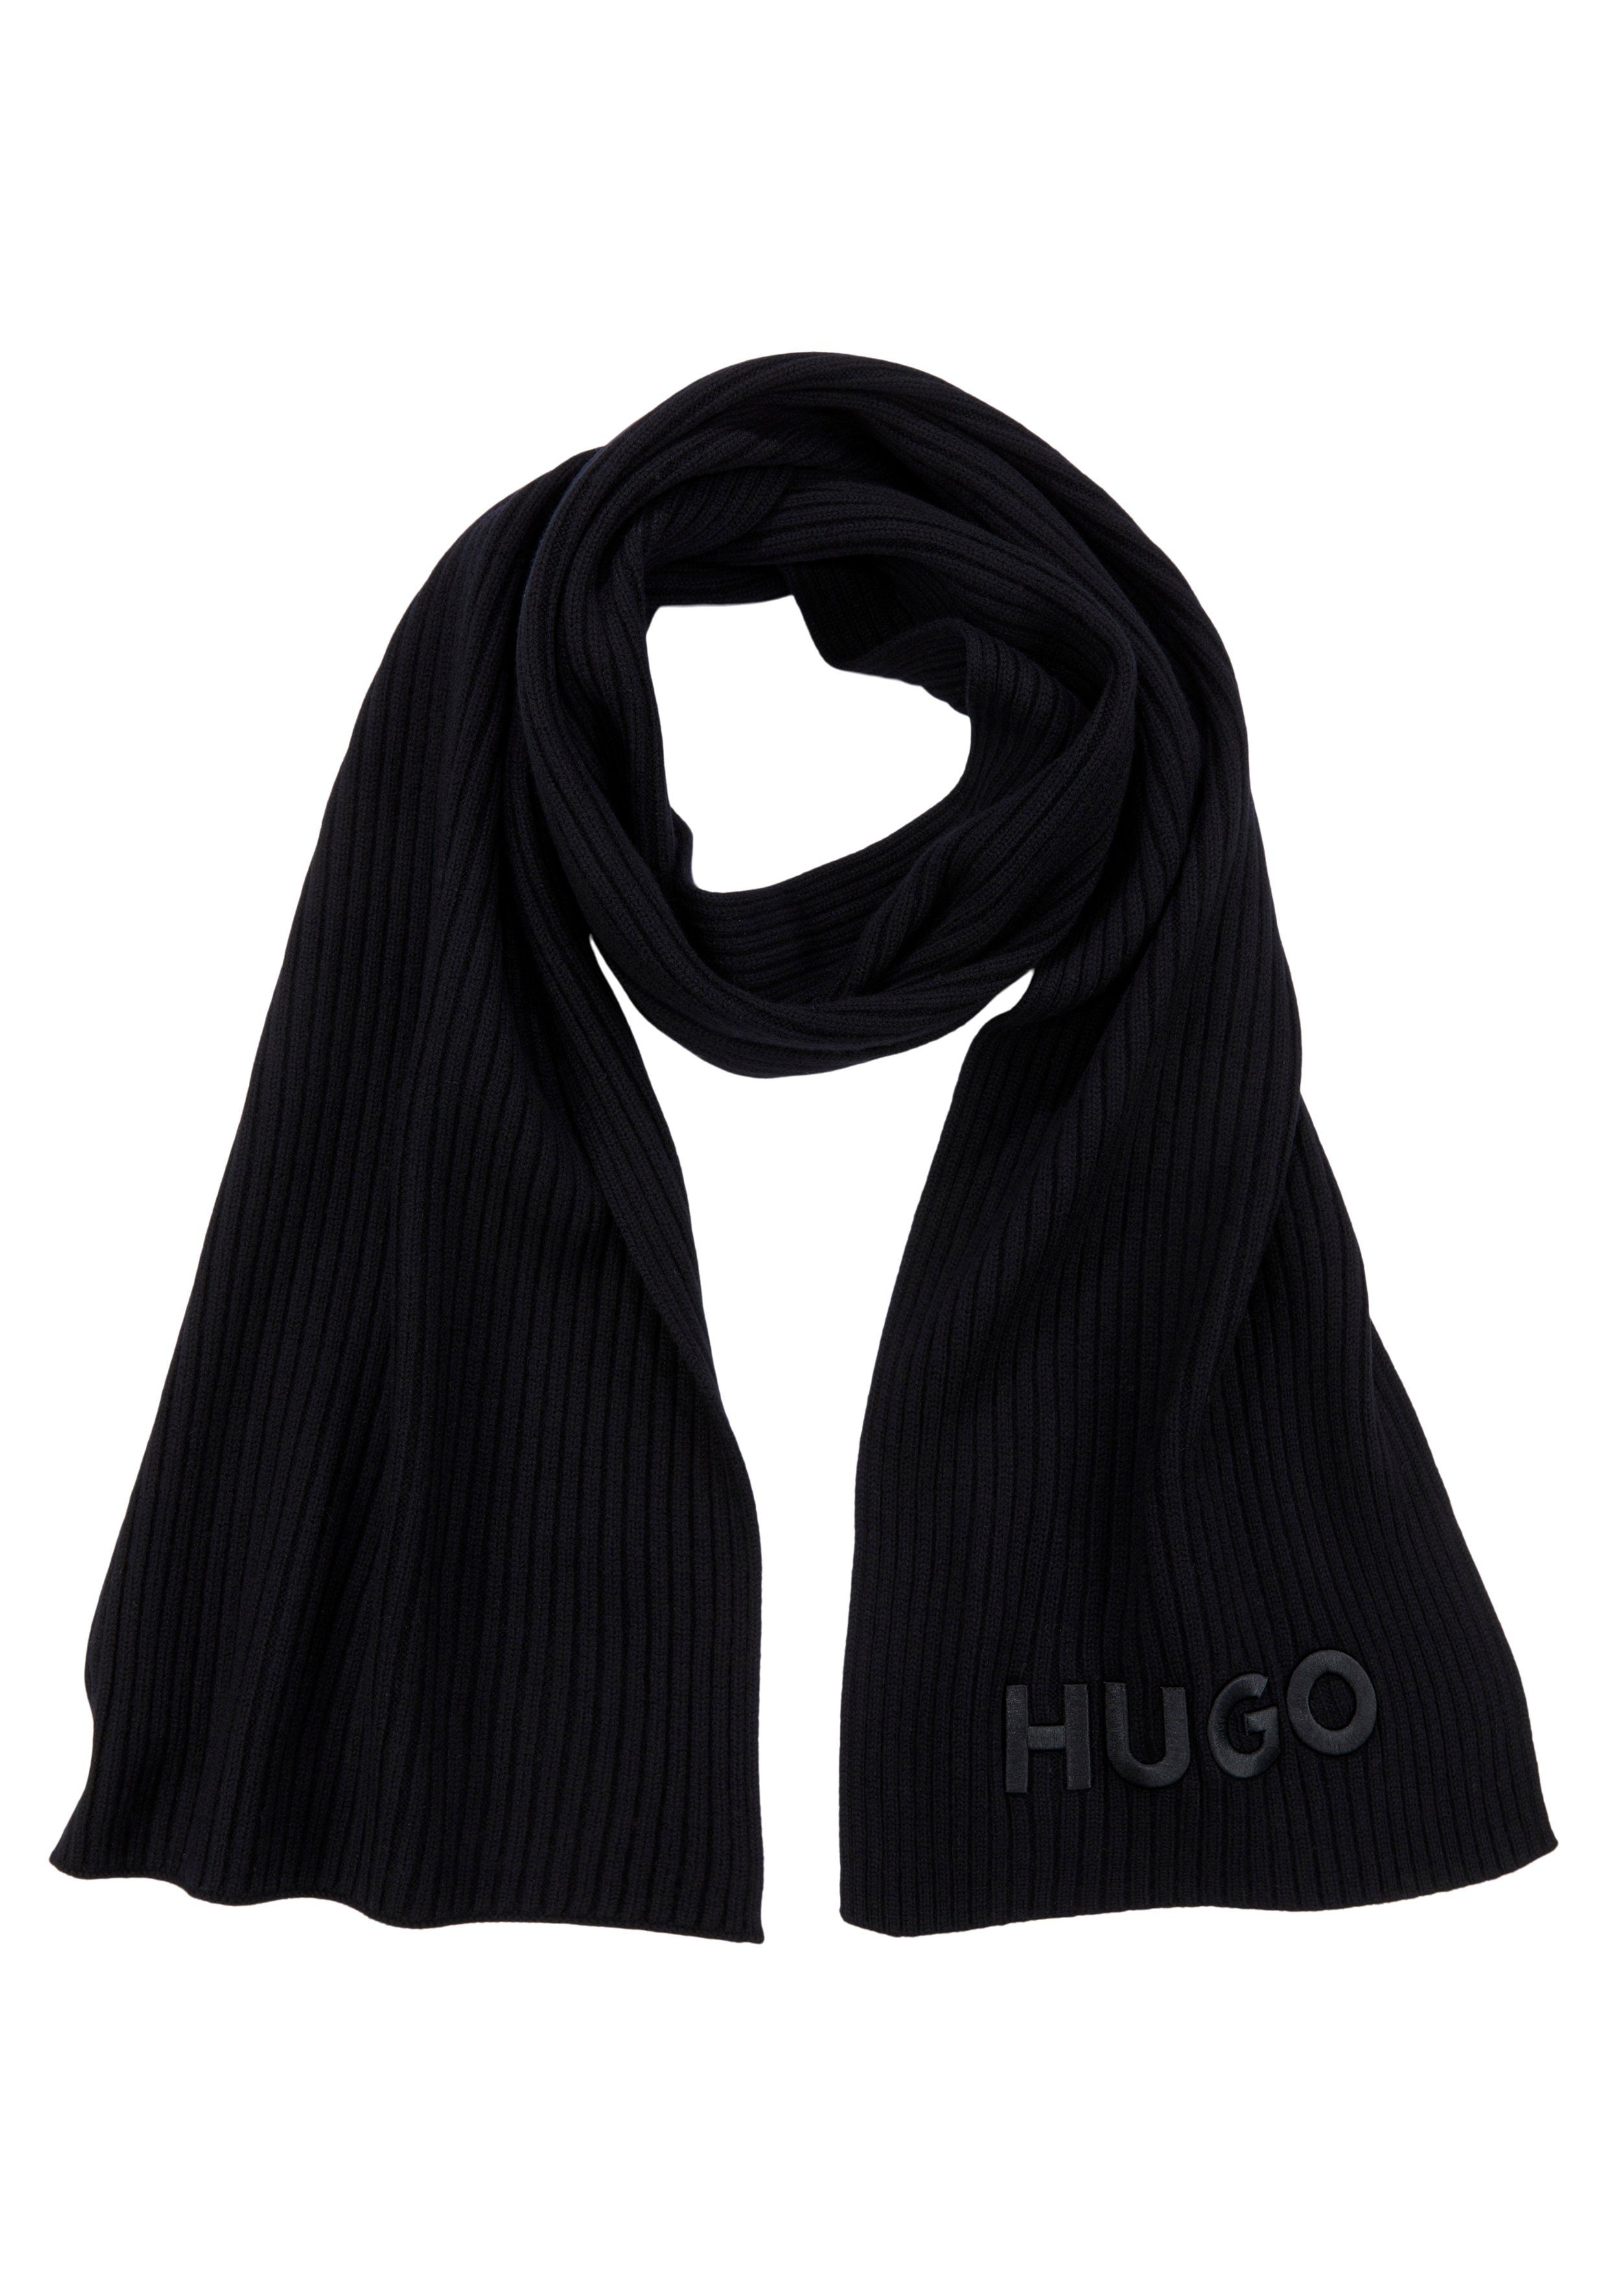 HUGO-Logoschriftzug mit HUGO Black Schal Zunio-1,